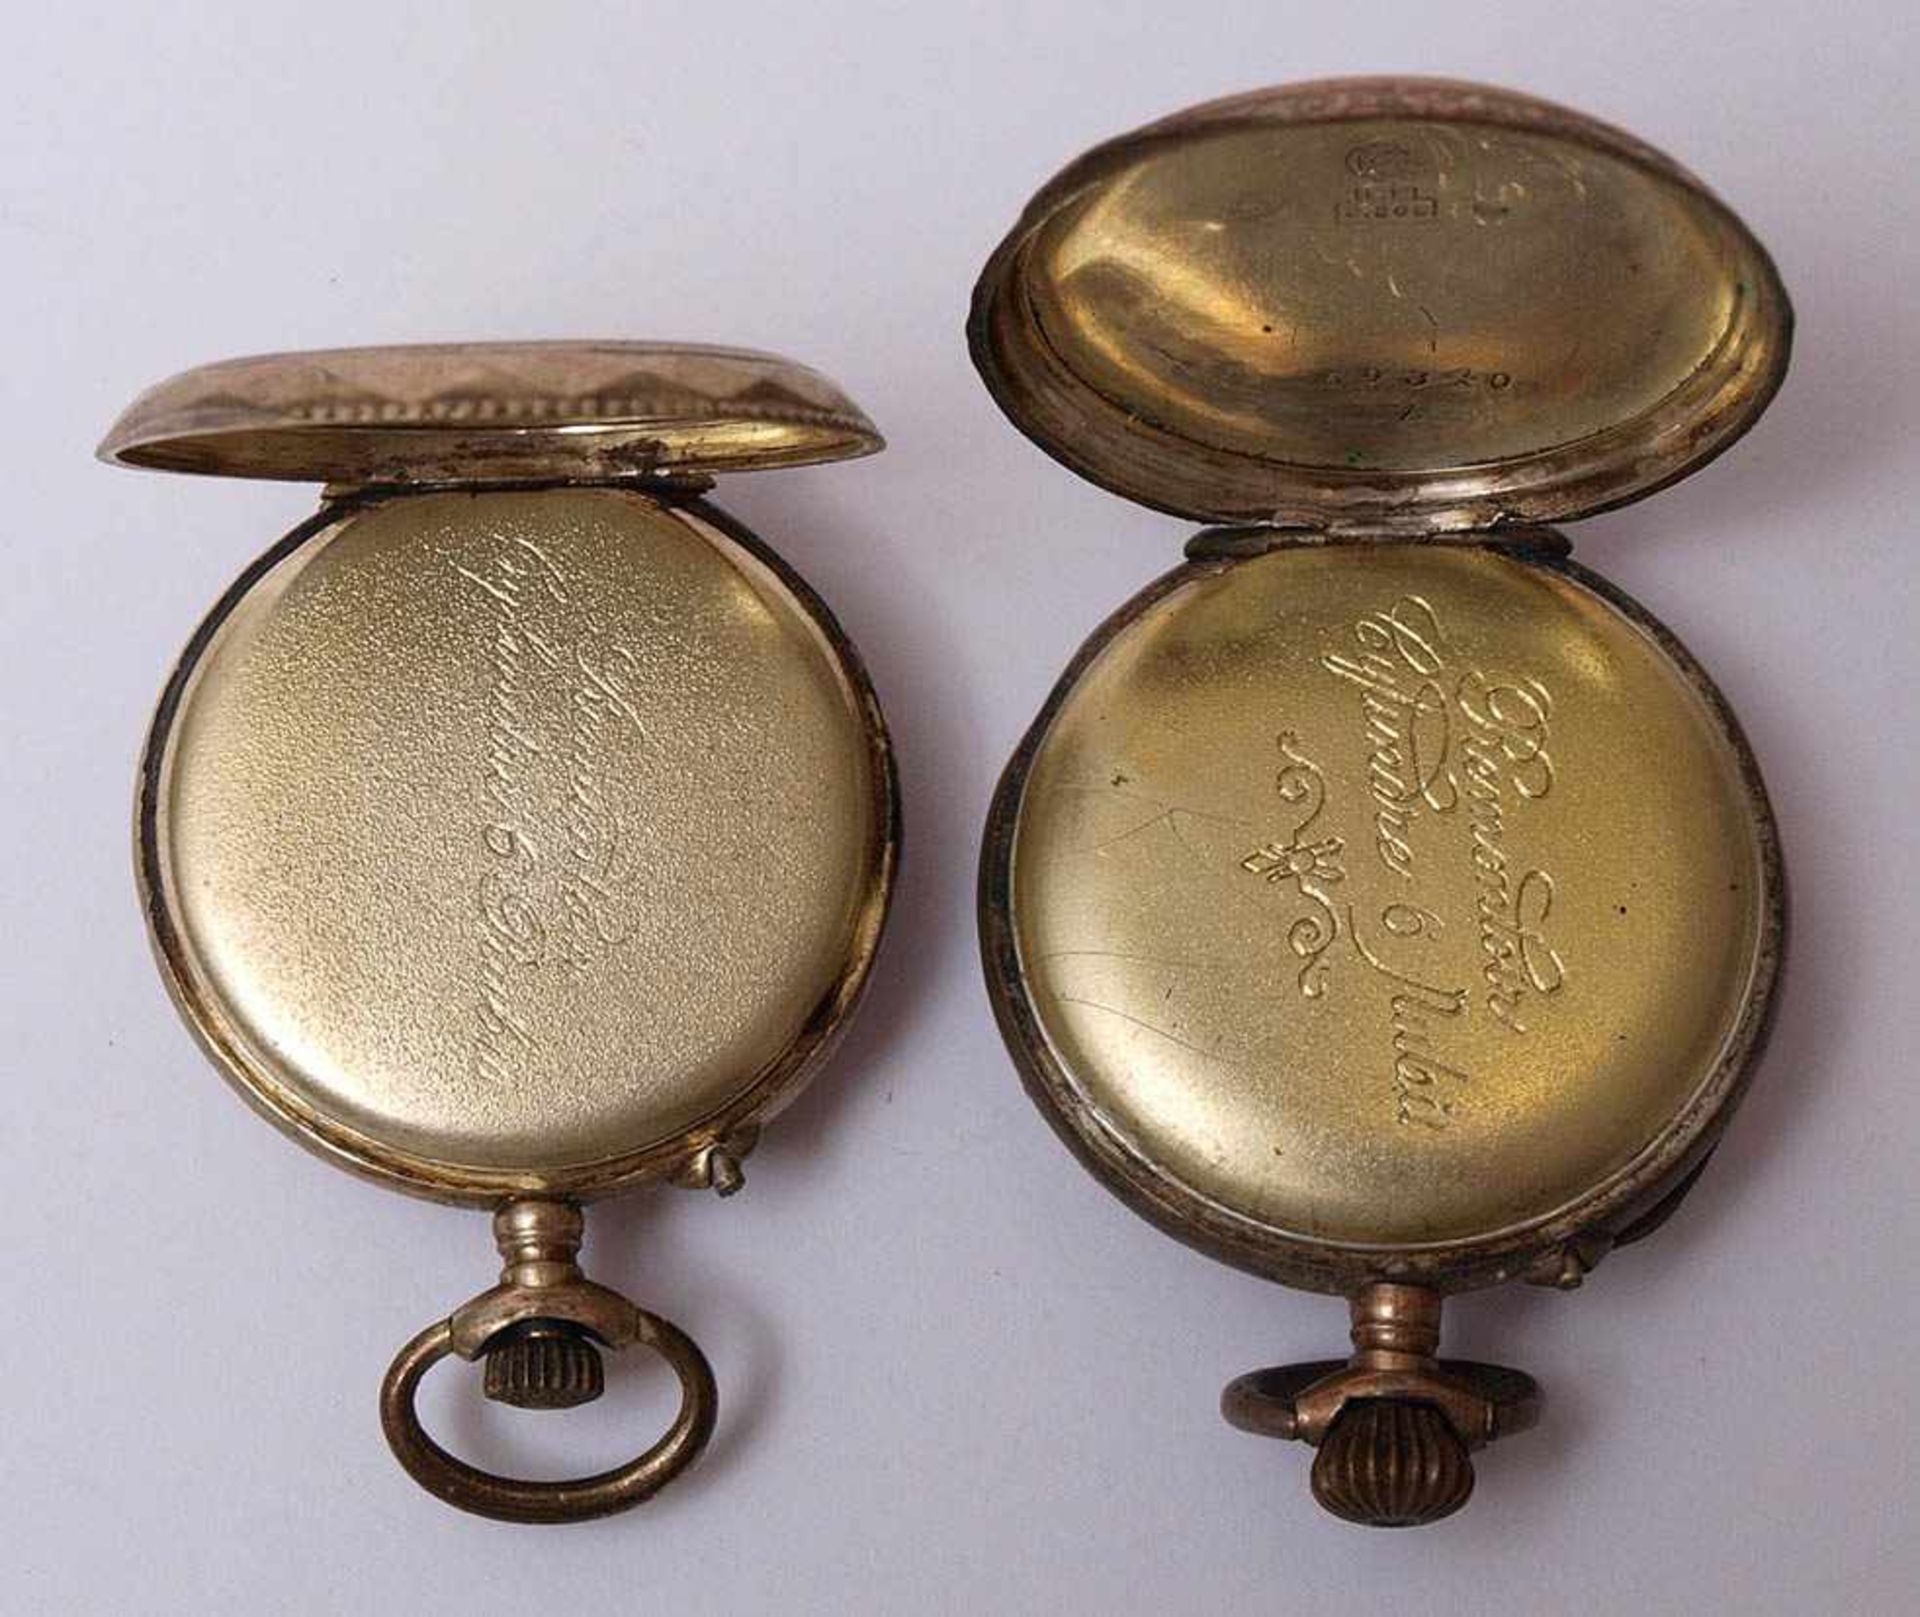 Zwei Damentaschenuhren Rundes Gehäuse aus Silber 800 mit reliefiertem Rand, guillochierter - Bild 3 aus 3